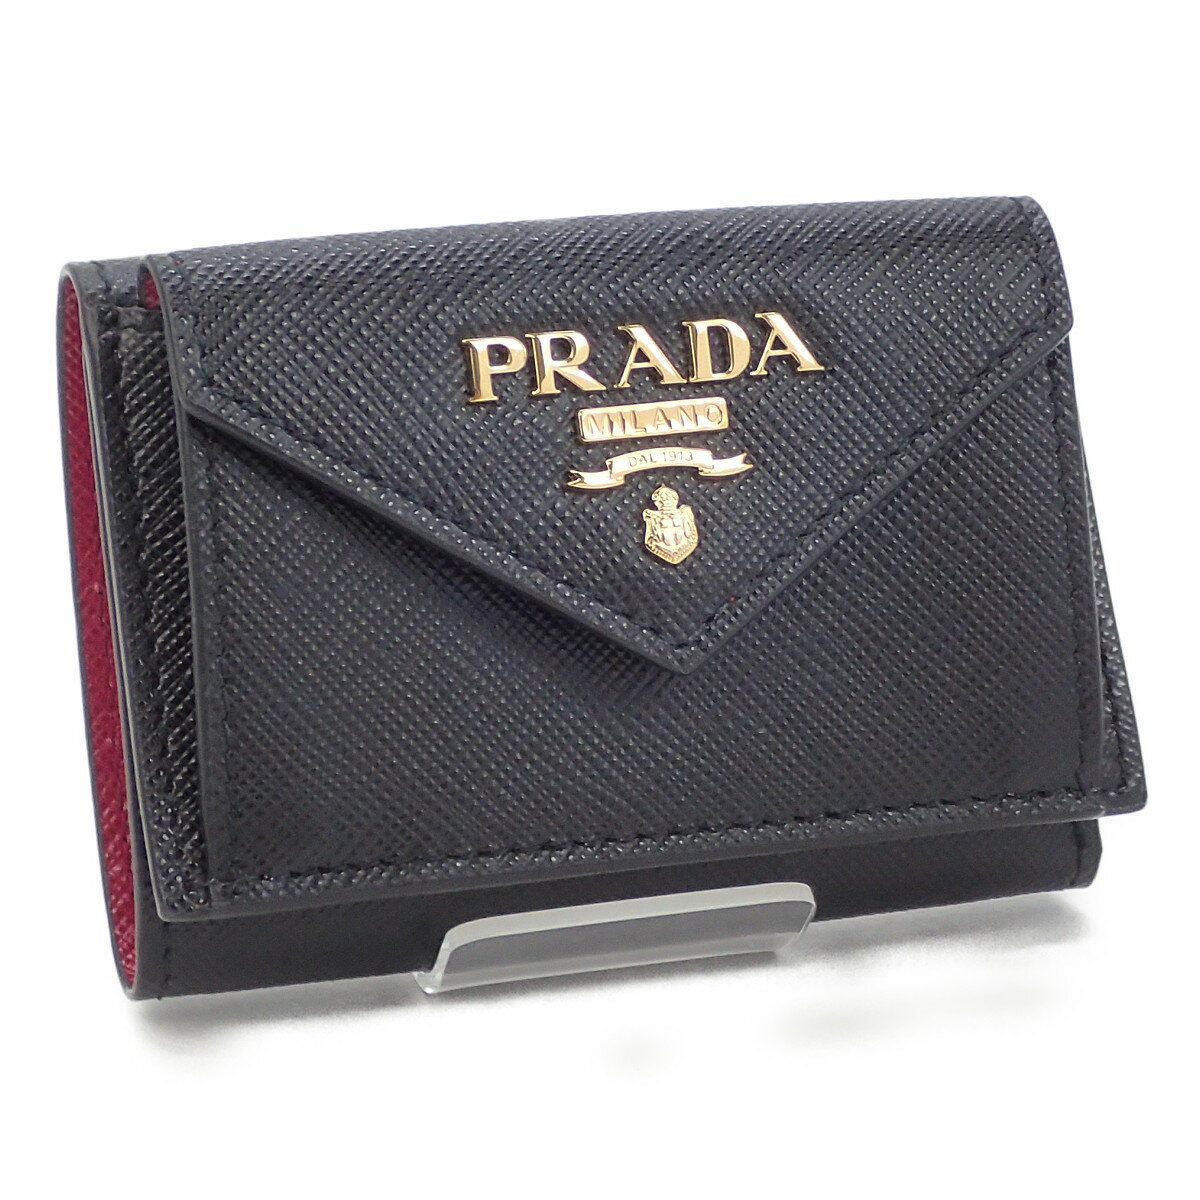 【中古】【Sランク】PRADA プラダ レザー コンパクト ウォレット 三つ折り財布 1MH021 ブラック